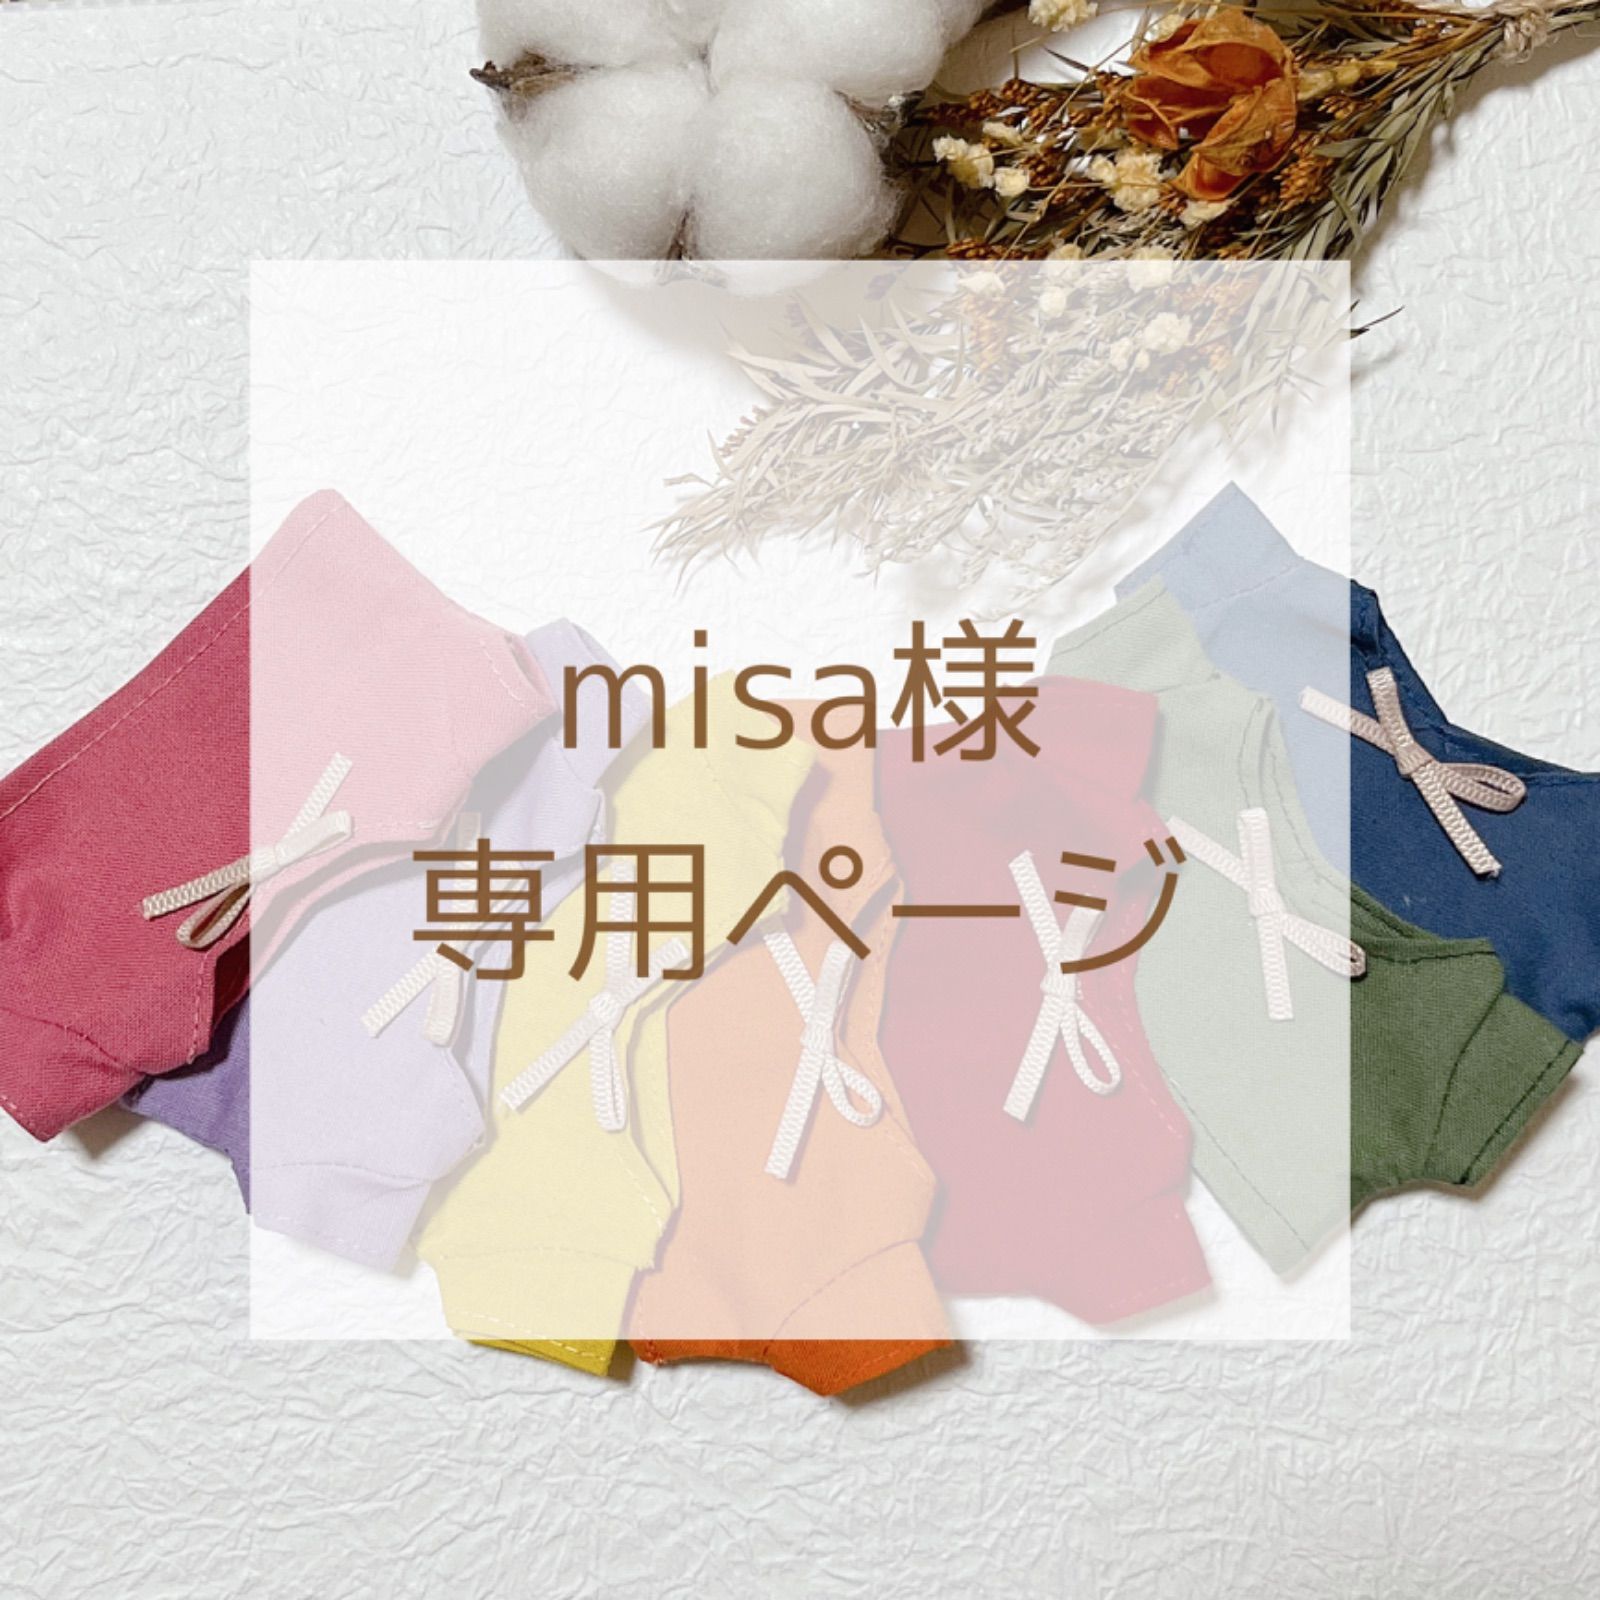 misa様専用ページ - メルカリ